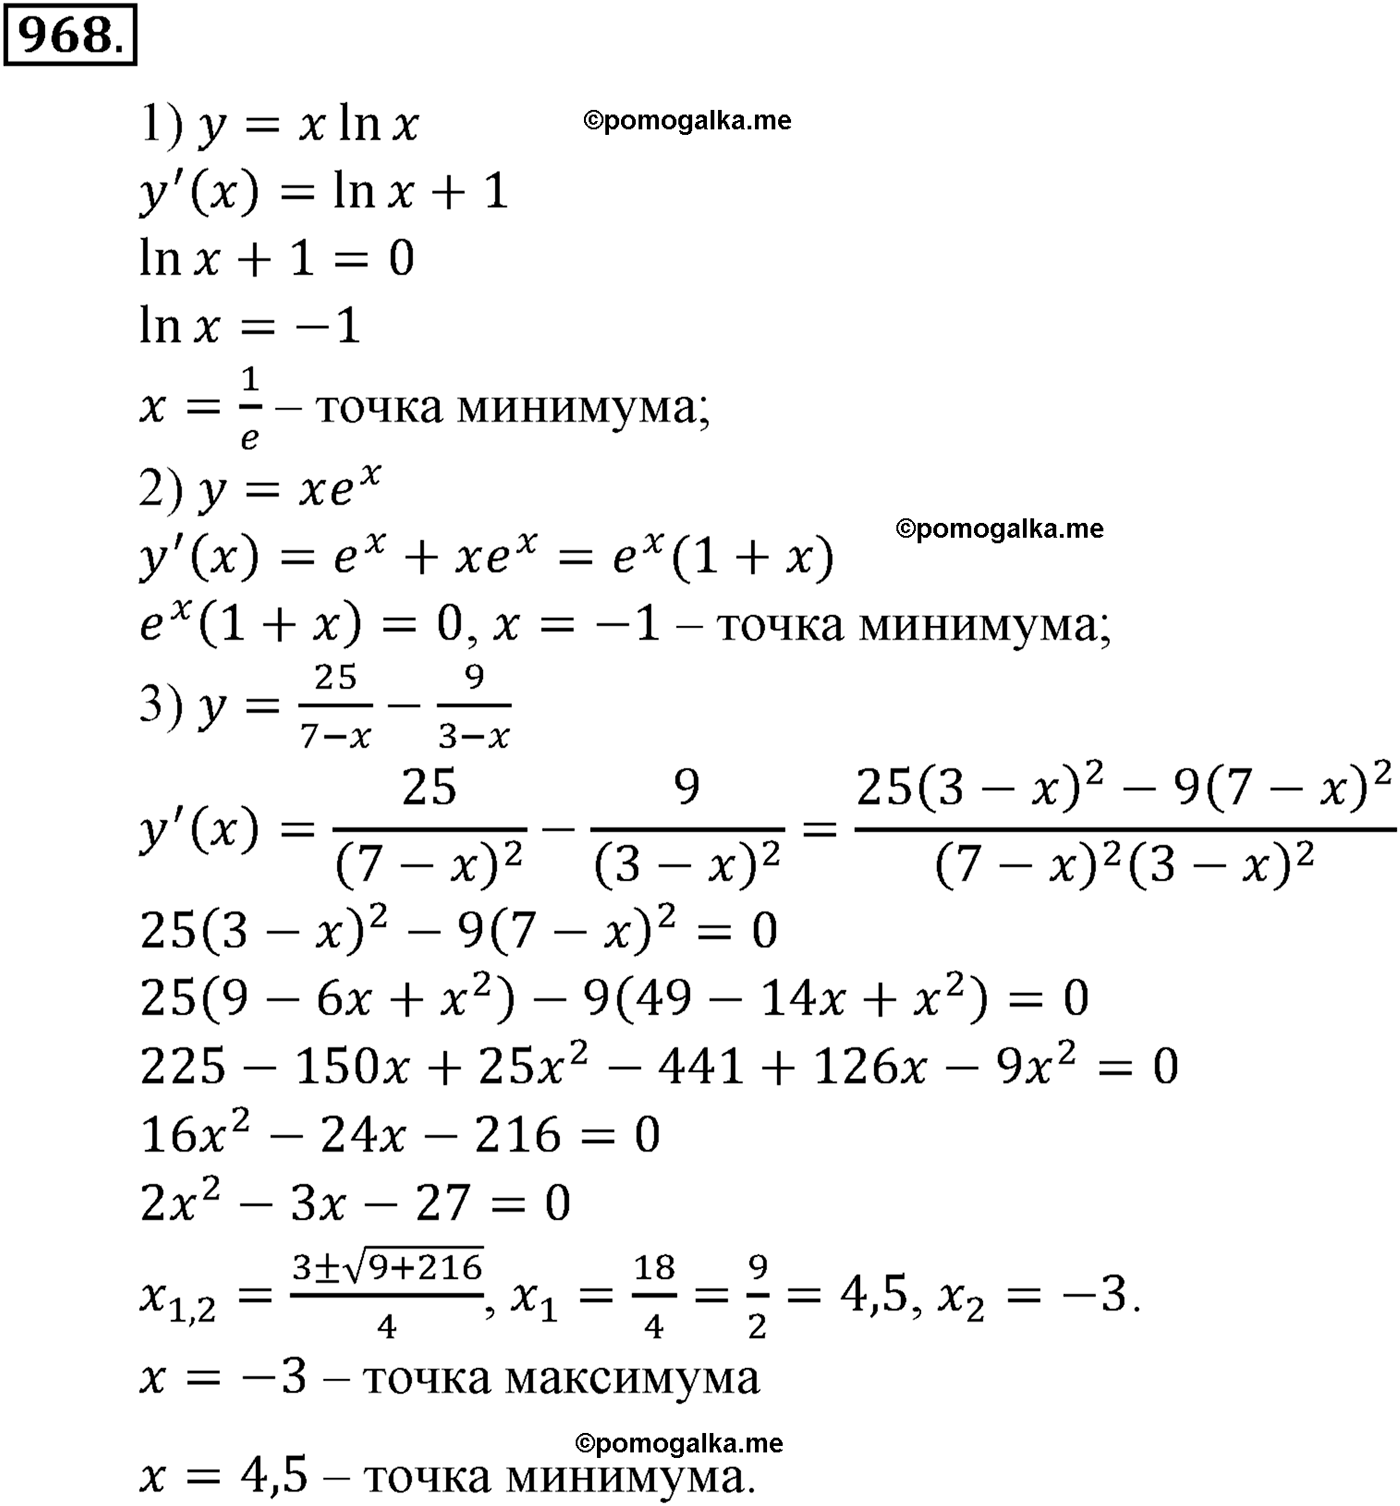 разбор задачи №968 по алгебре за 10-11 класс из учебника Алимова, Колягина